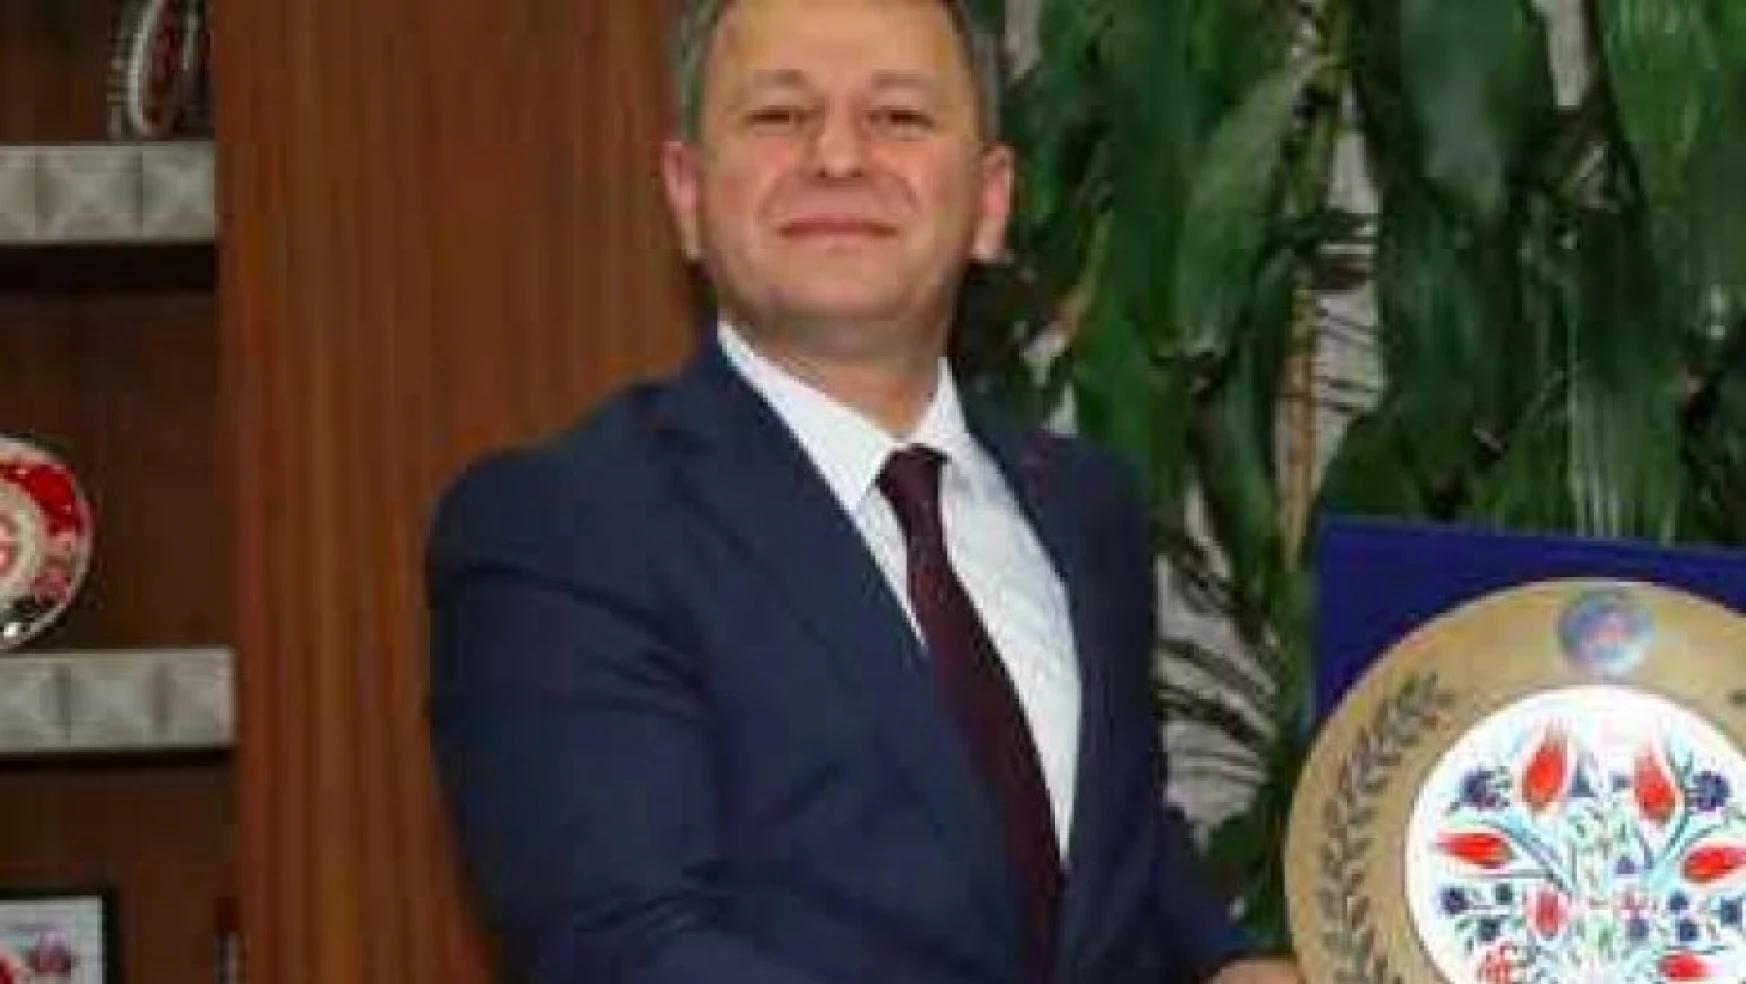 ÖSYM Başkanı Halis Aygün görevden alındı